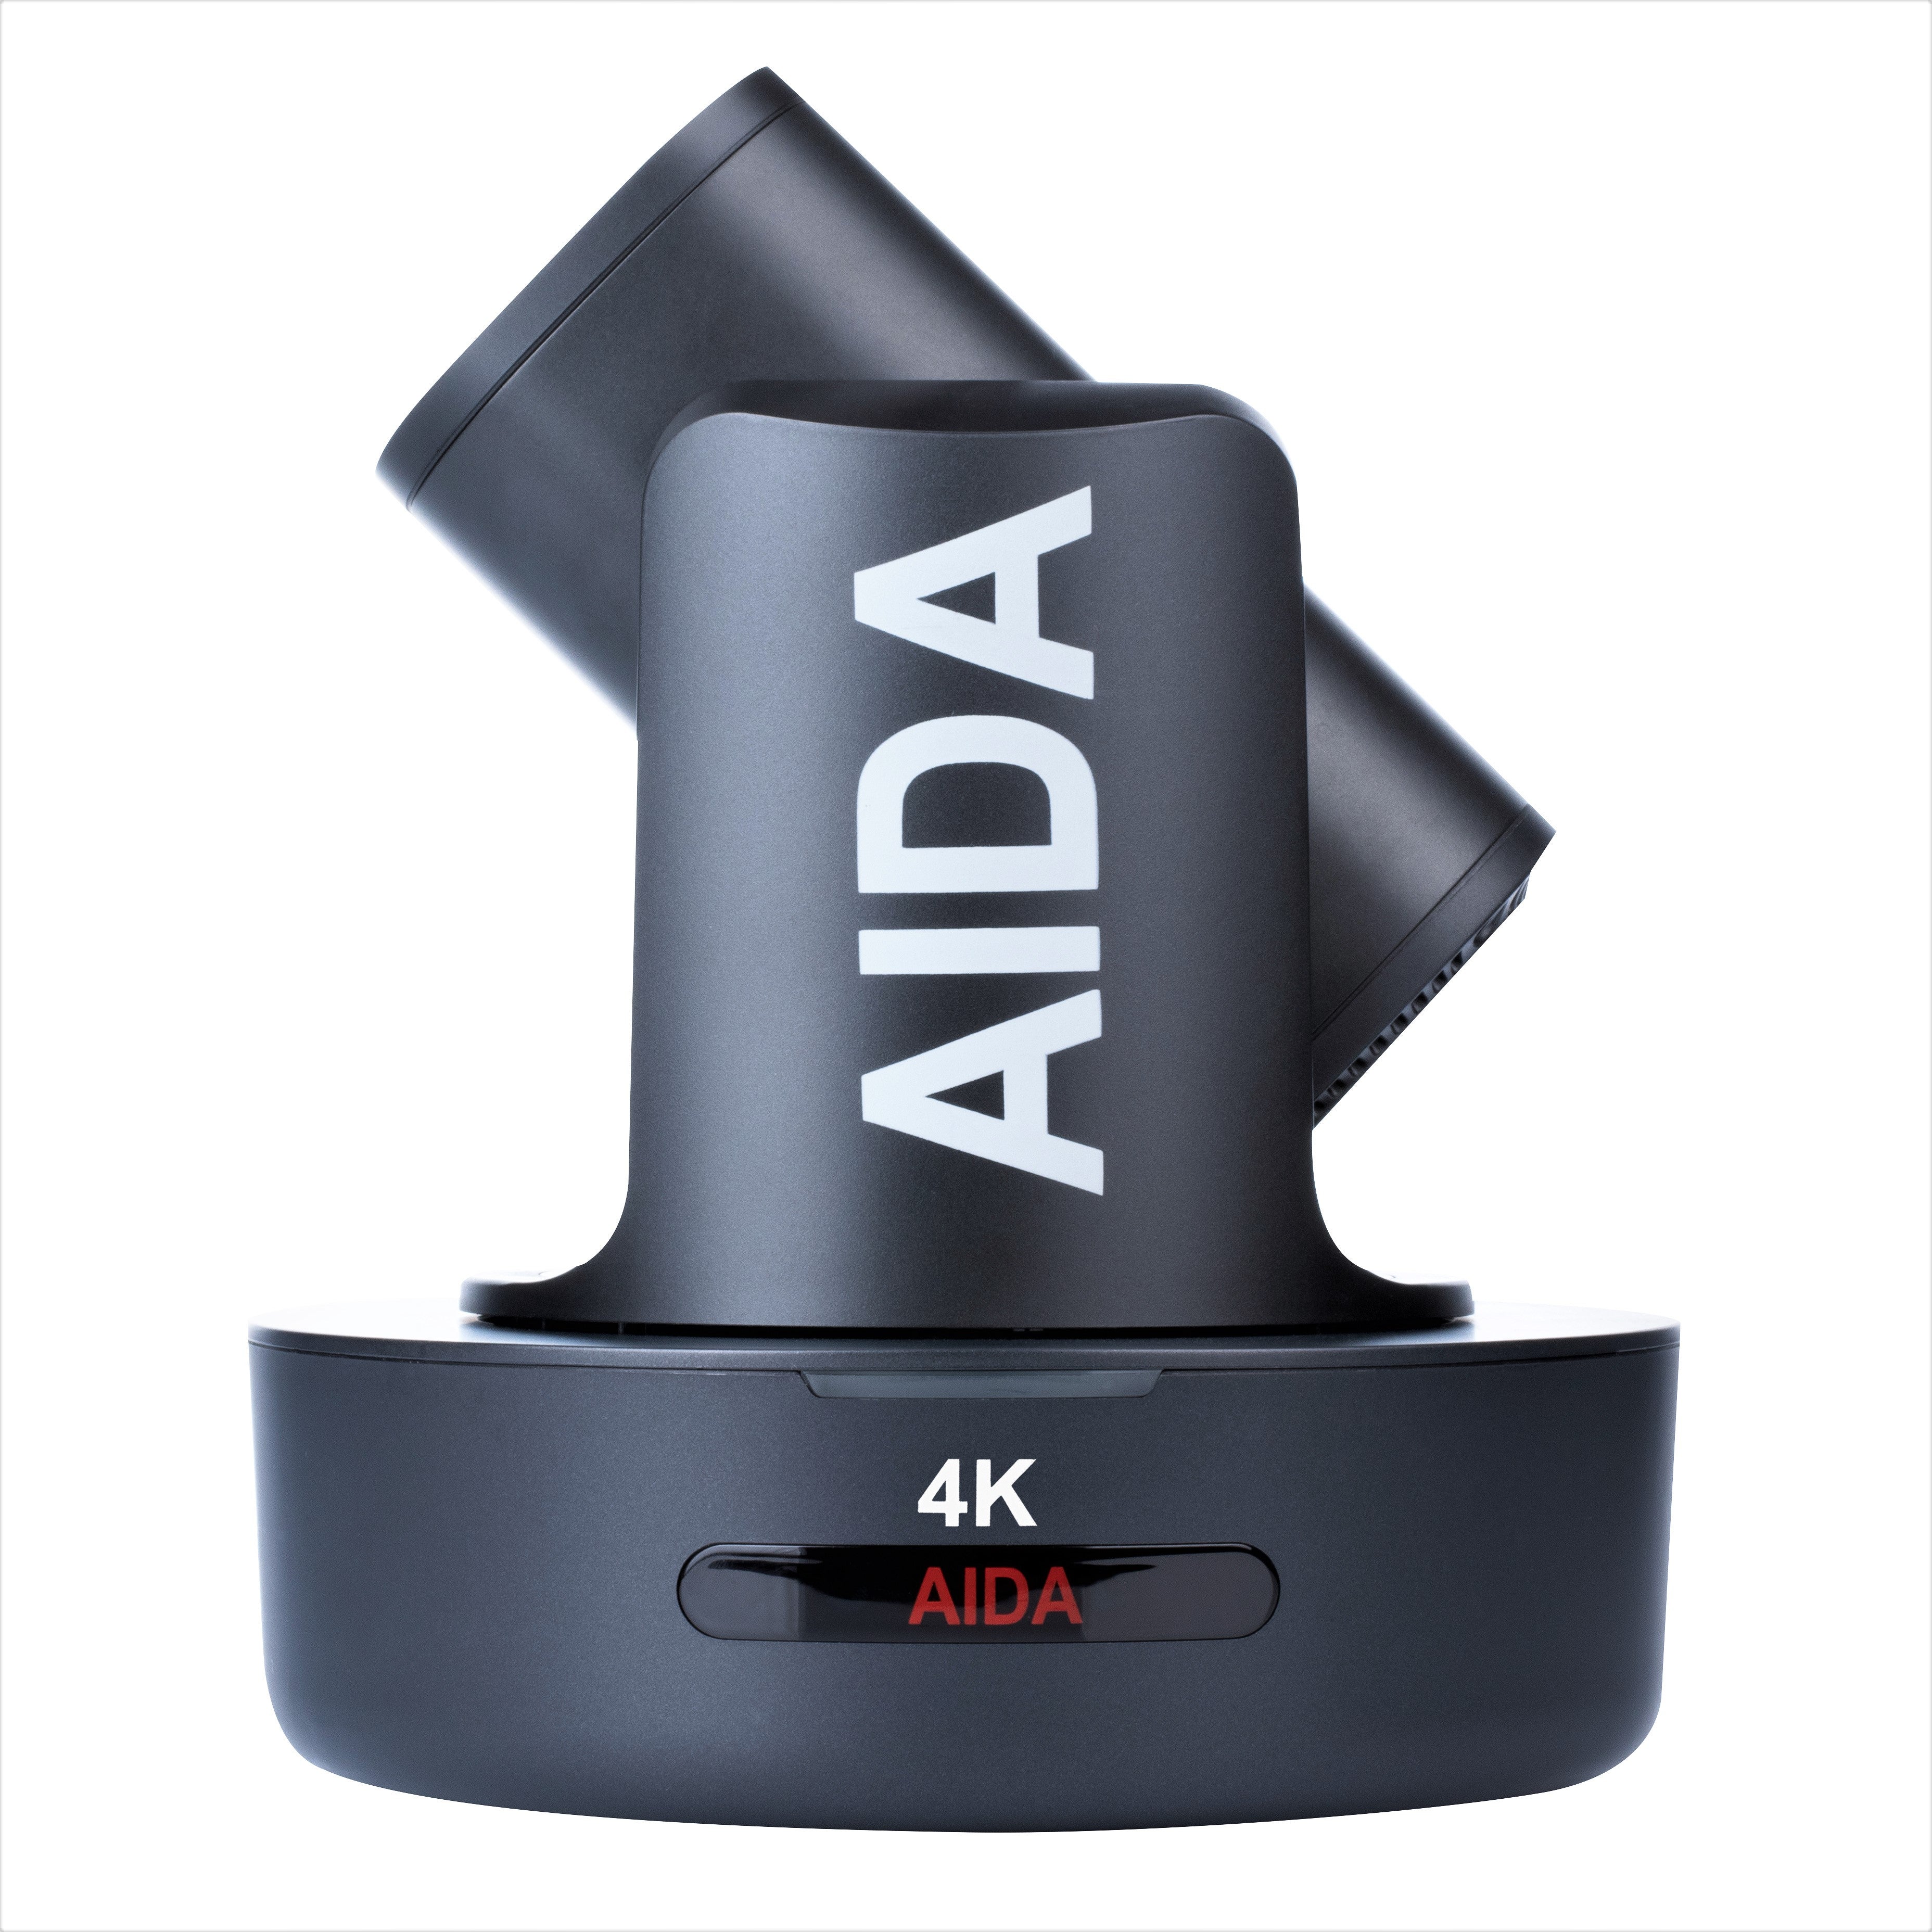 AIDA Imaging Broadcast/Conference NDI®|HX 4K NDI/IP/HDMI PTZ Camera with 30x Optical Zoom (Black)